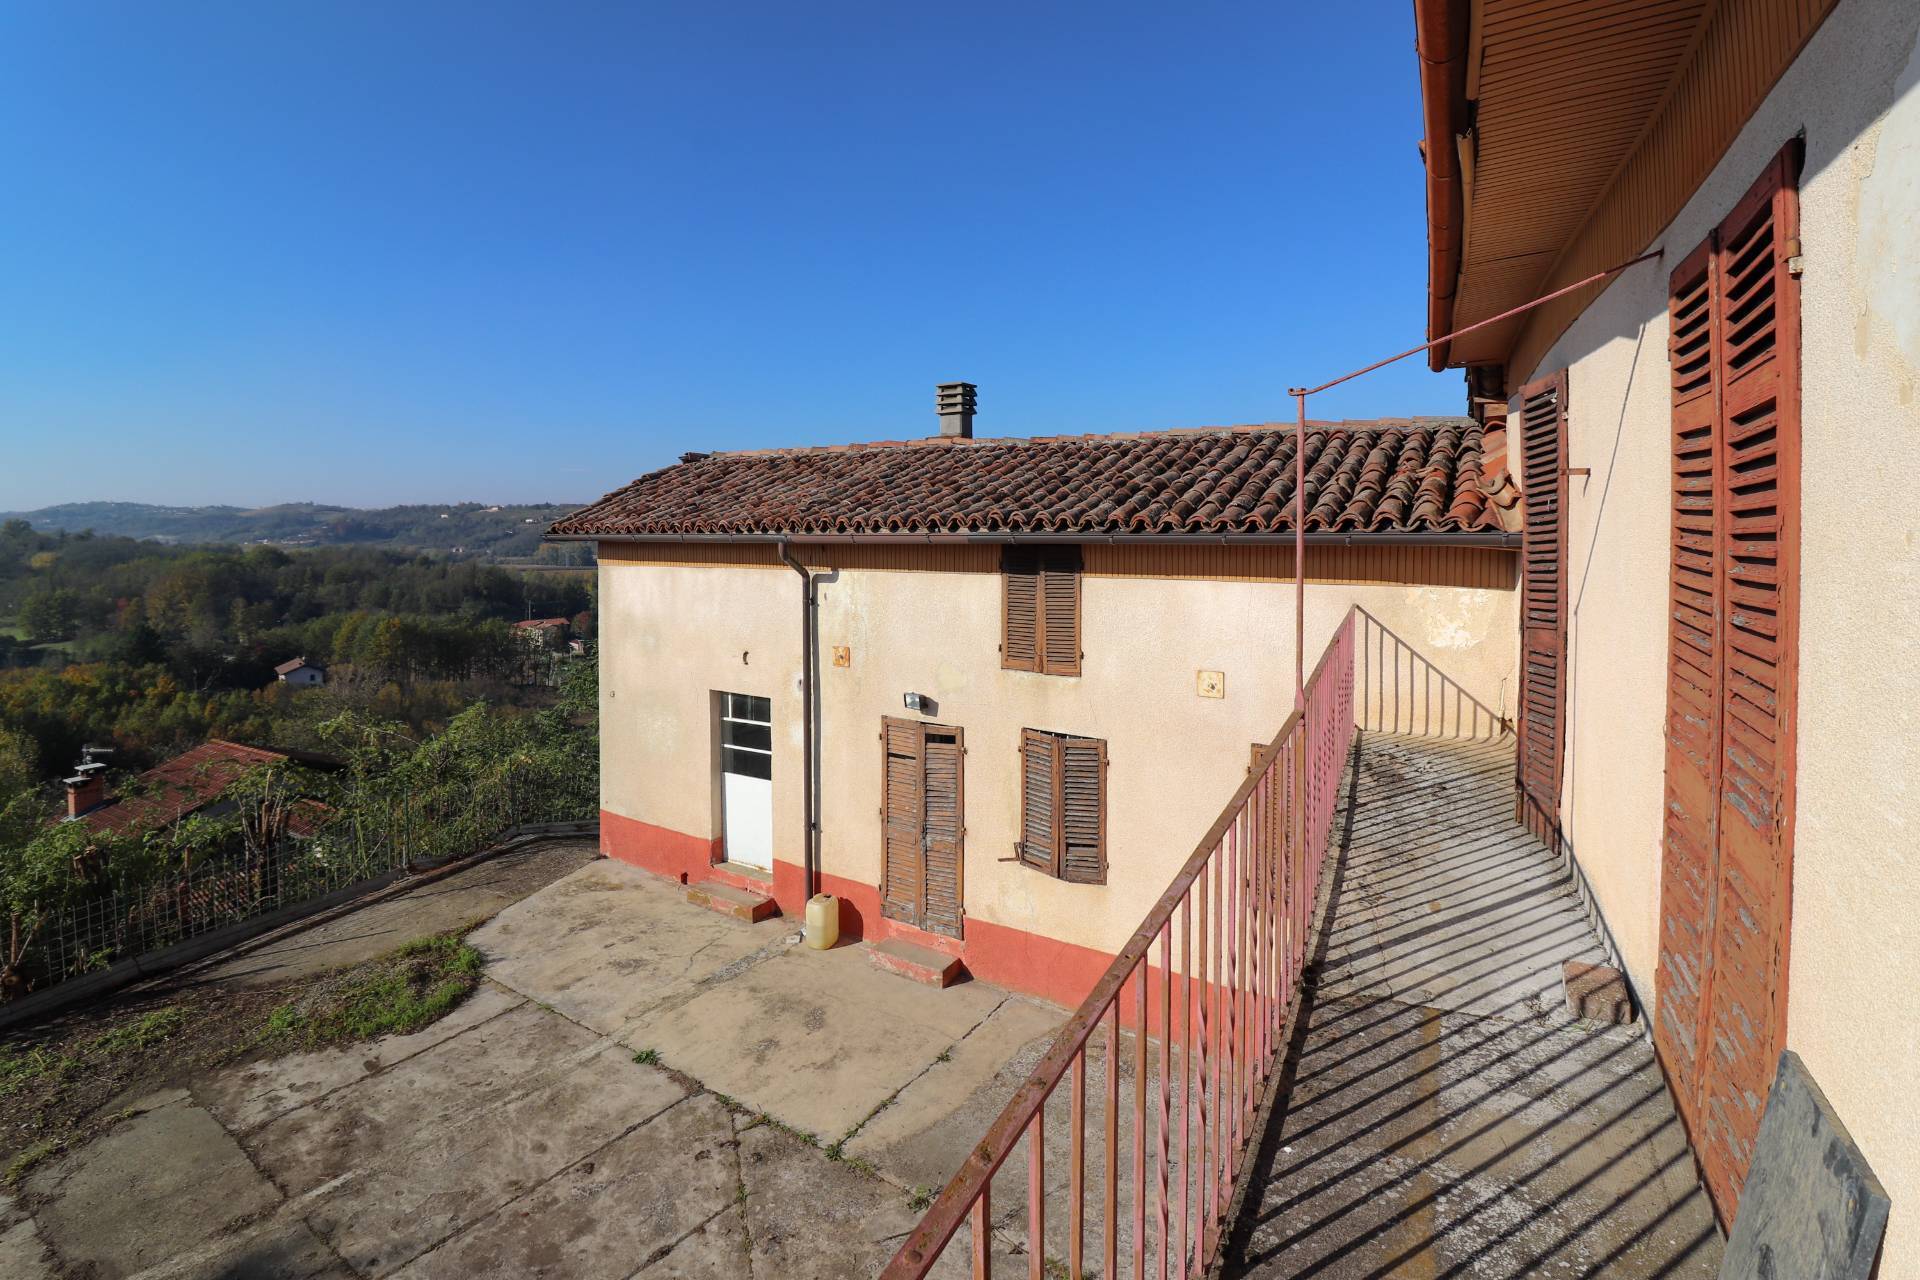 Rustico / Casale in vendita a Cortiglione, 7 locali, prezzo € 90.000 | PortaleAgenzieImmobiliari.it